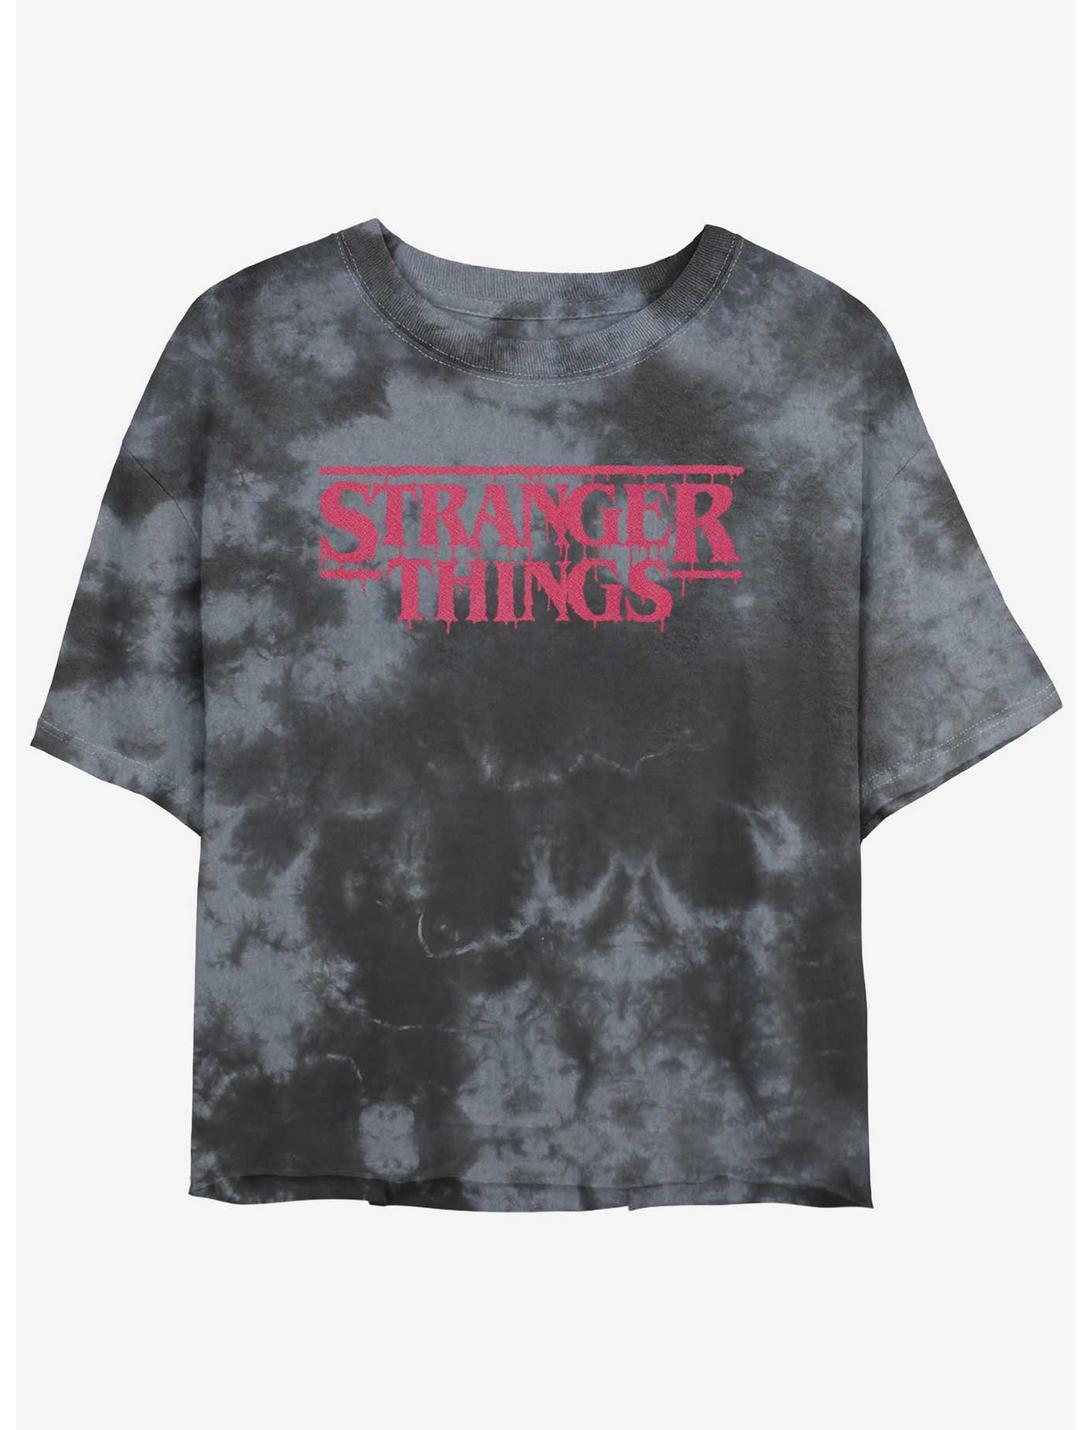 Stranger Things Logo Mineral Wash Crop Girls T-Shirt